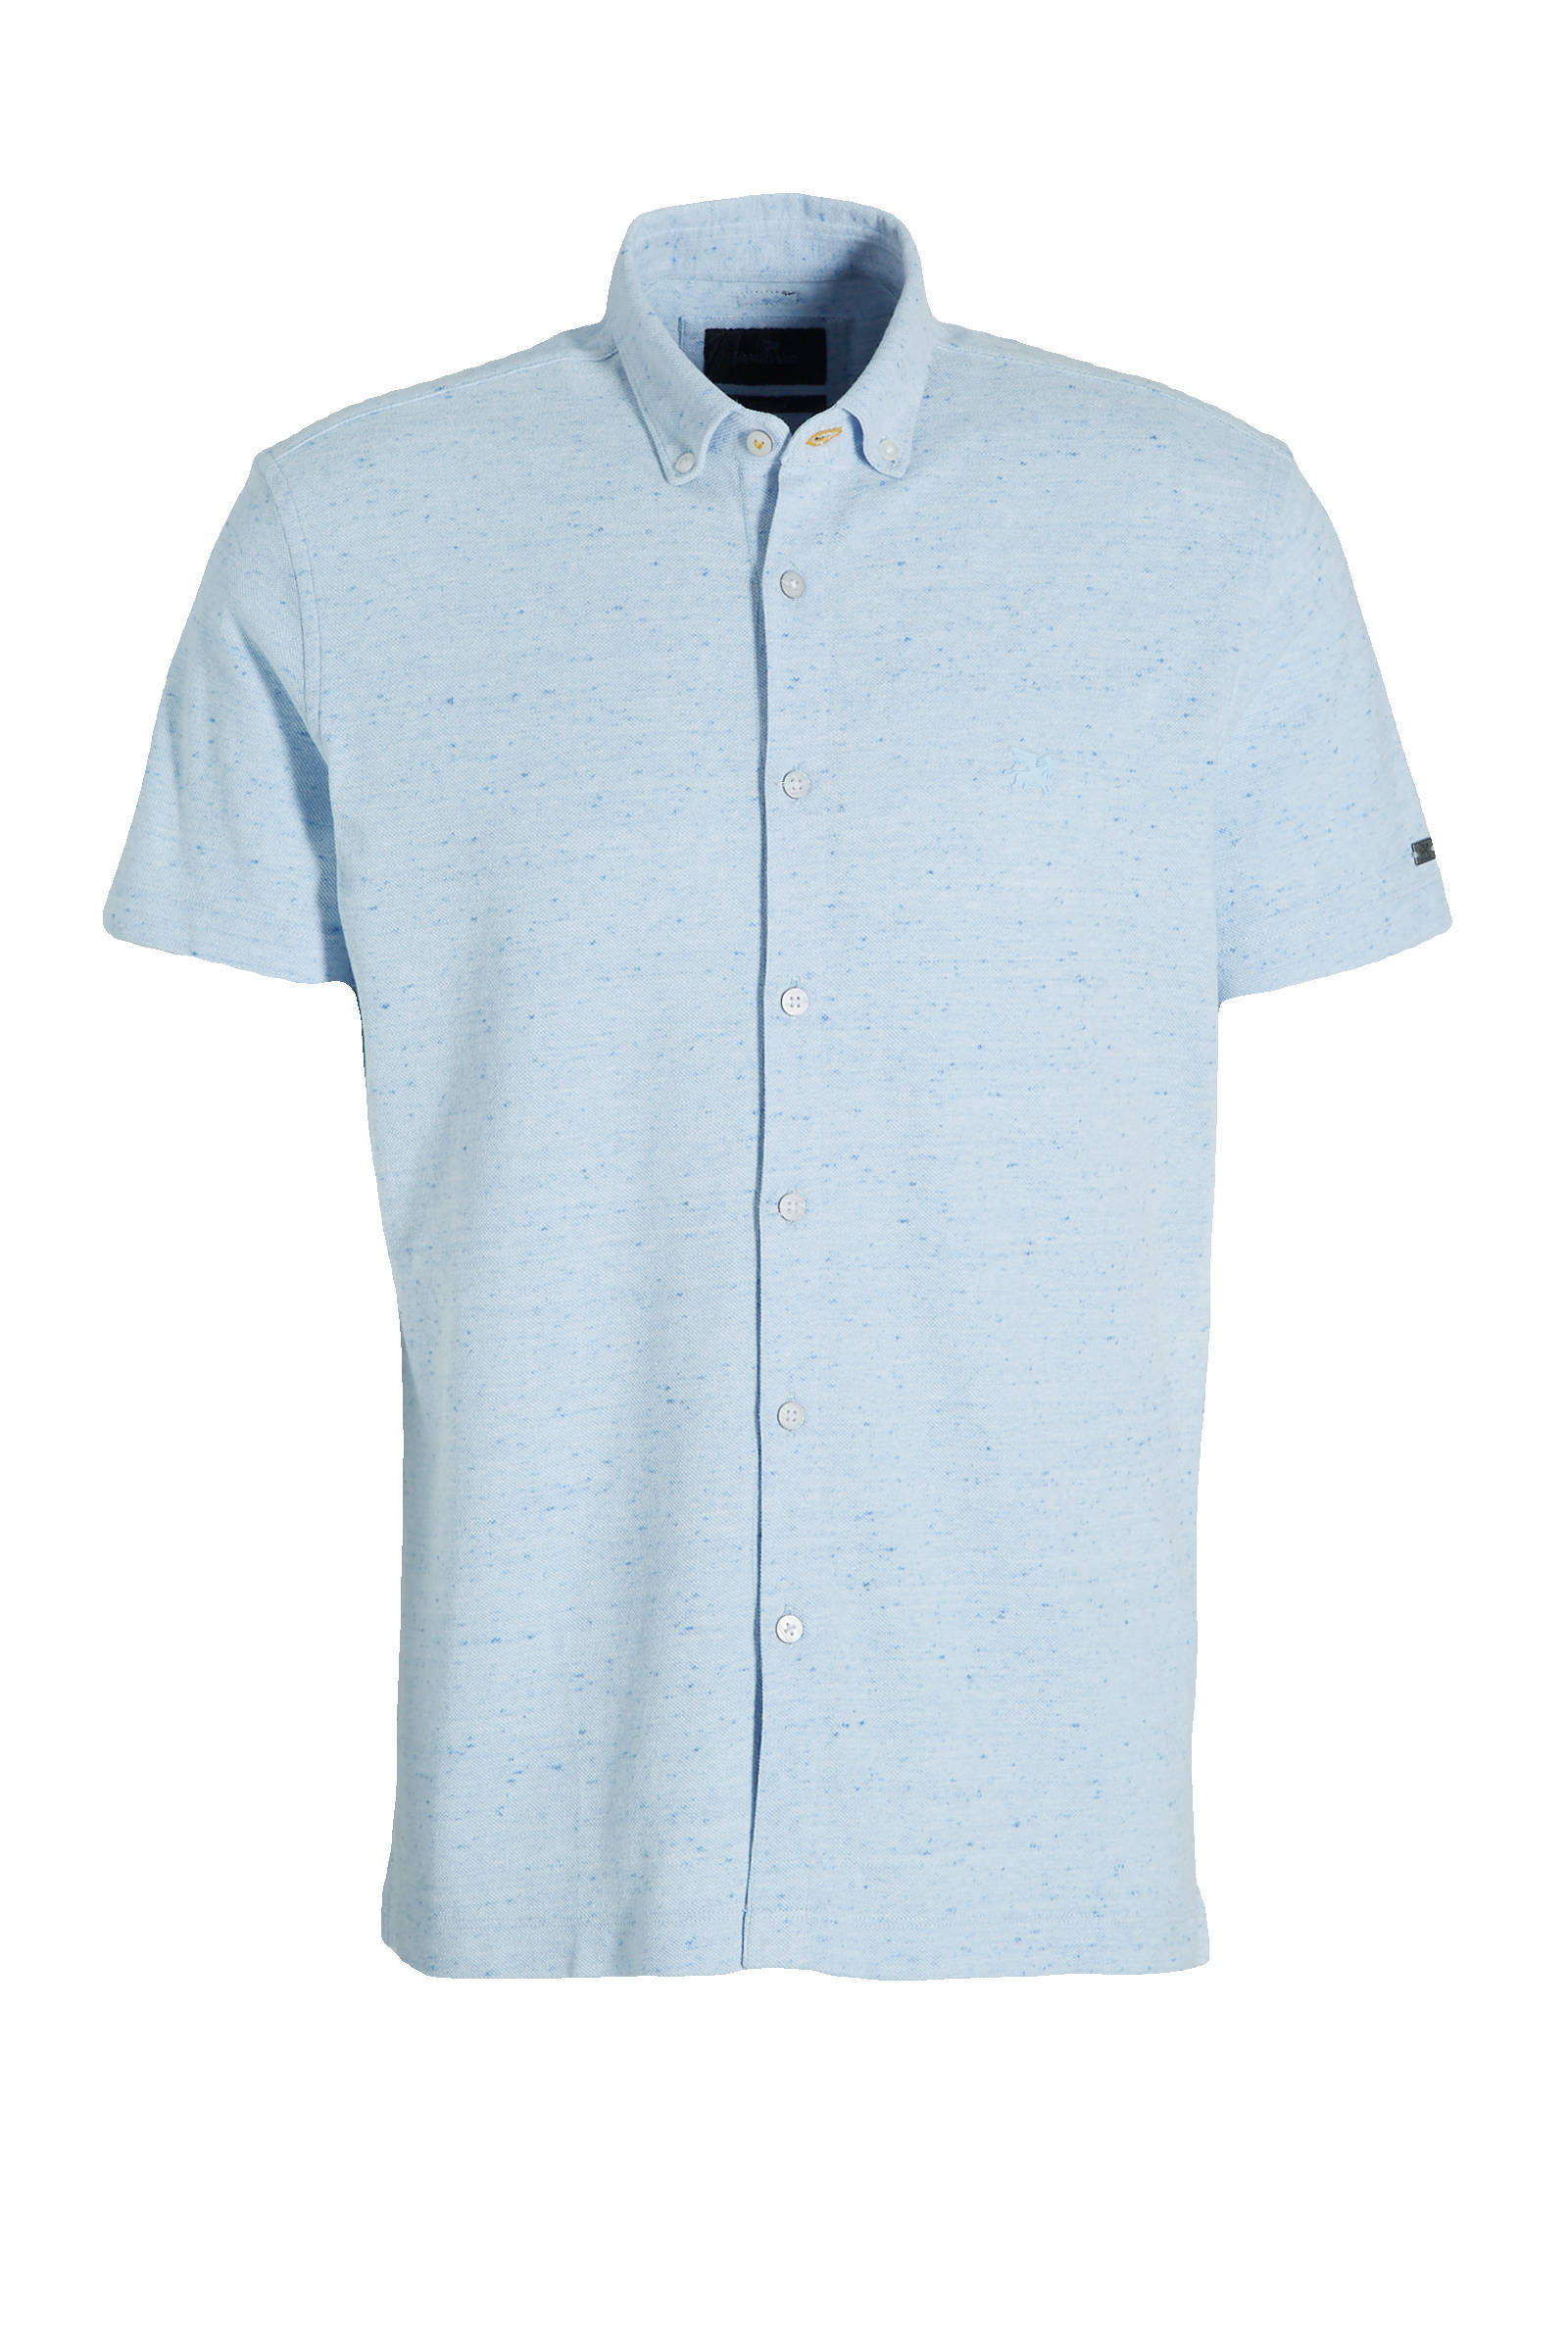 Vanguard gemêleerd regular fit overhemd lichtblauw online kopen